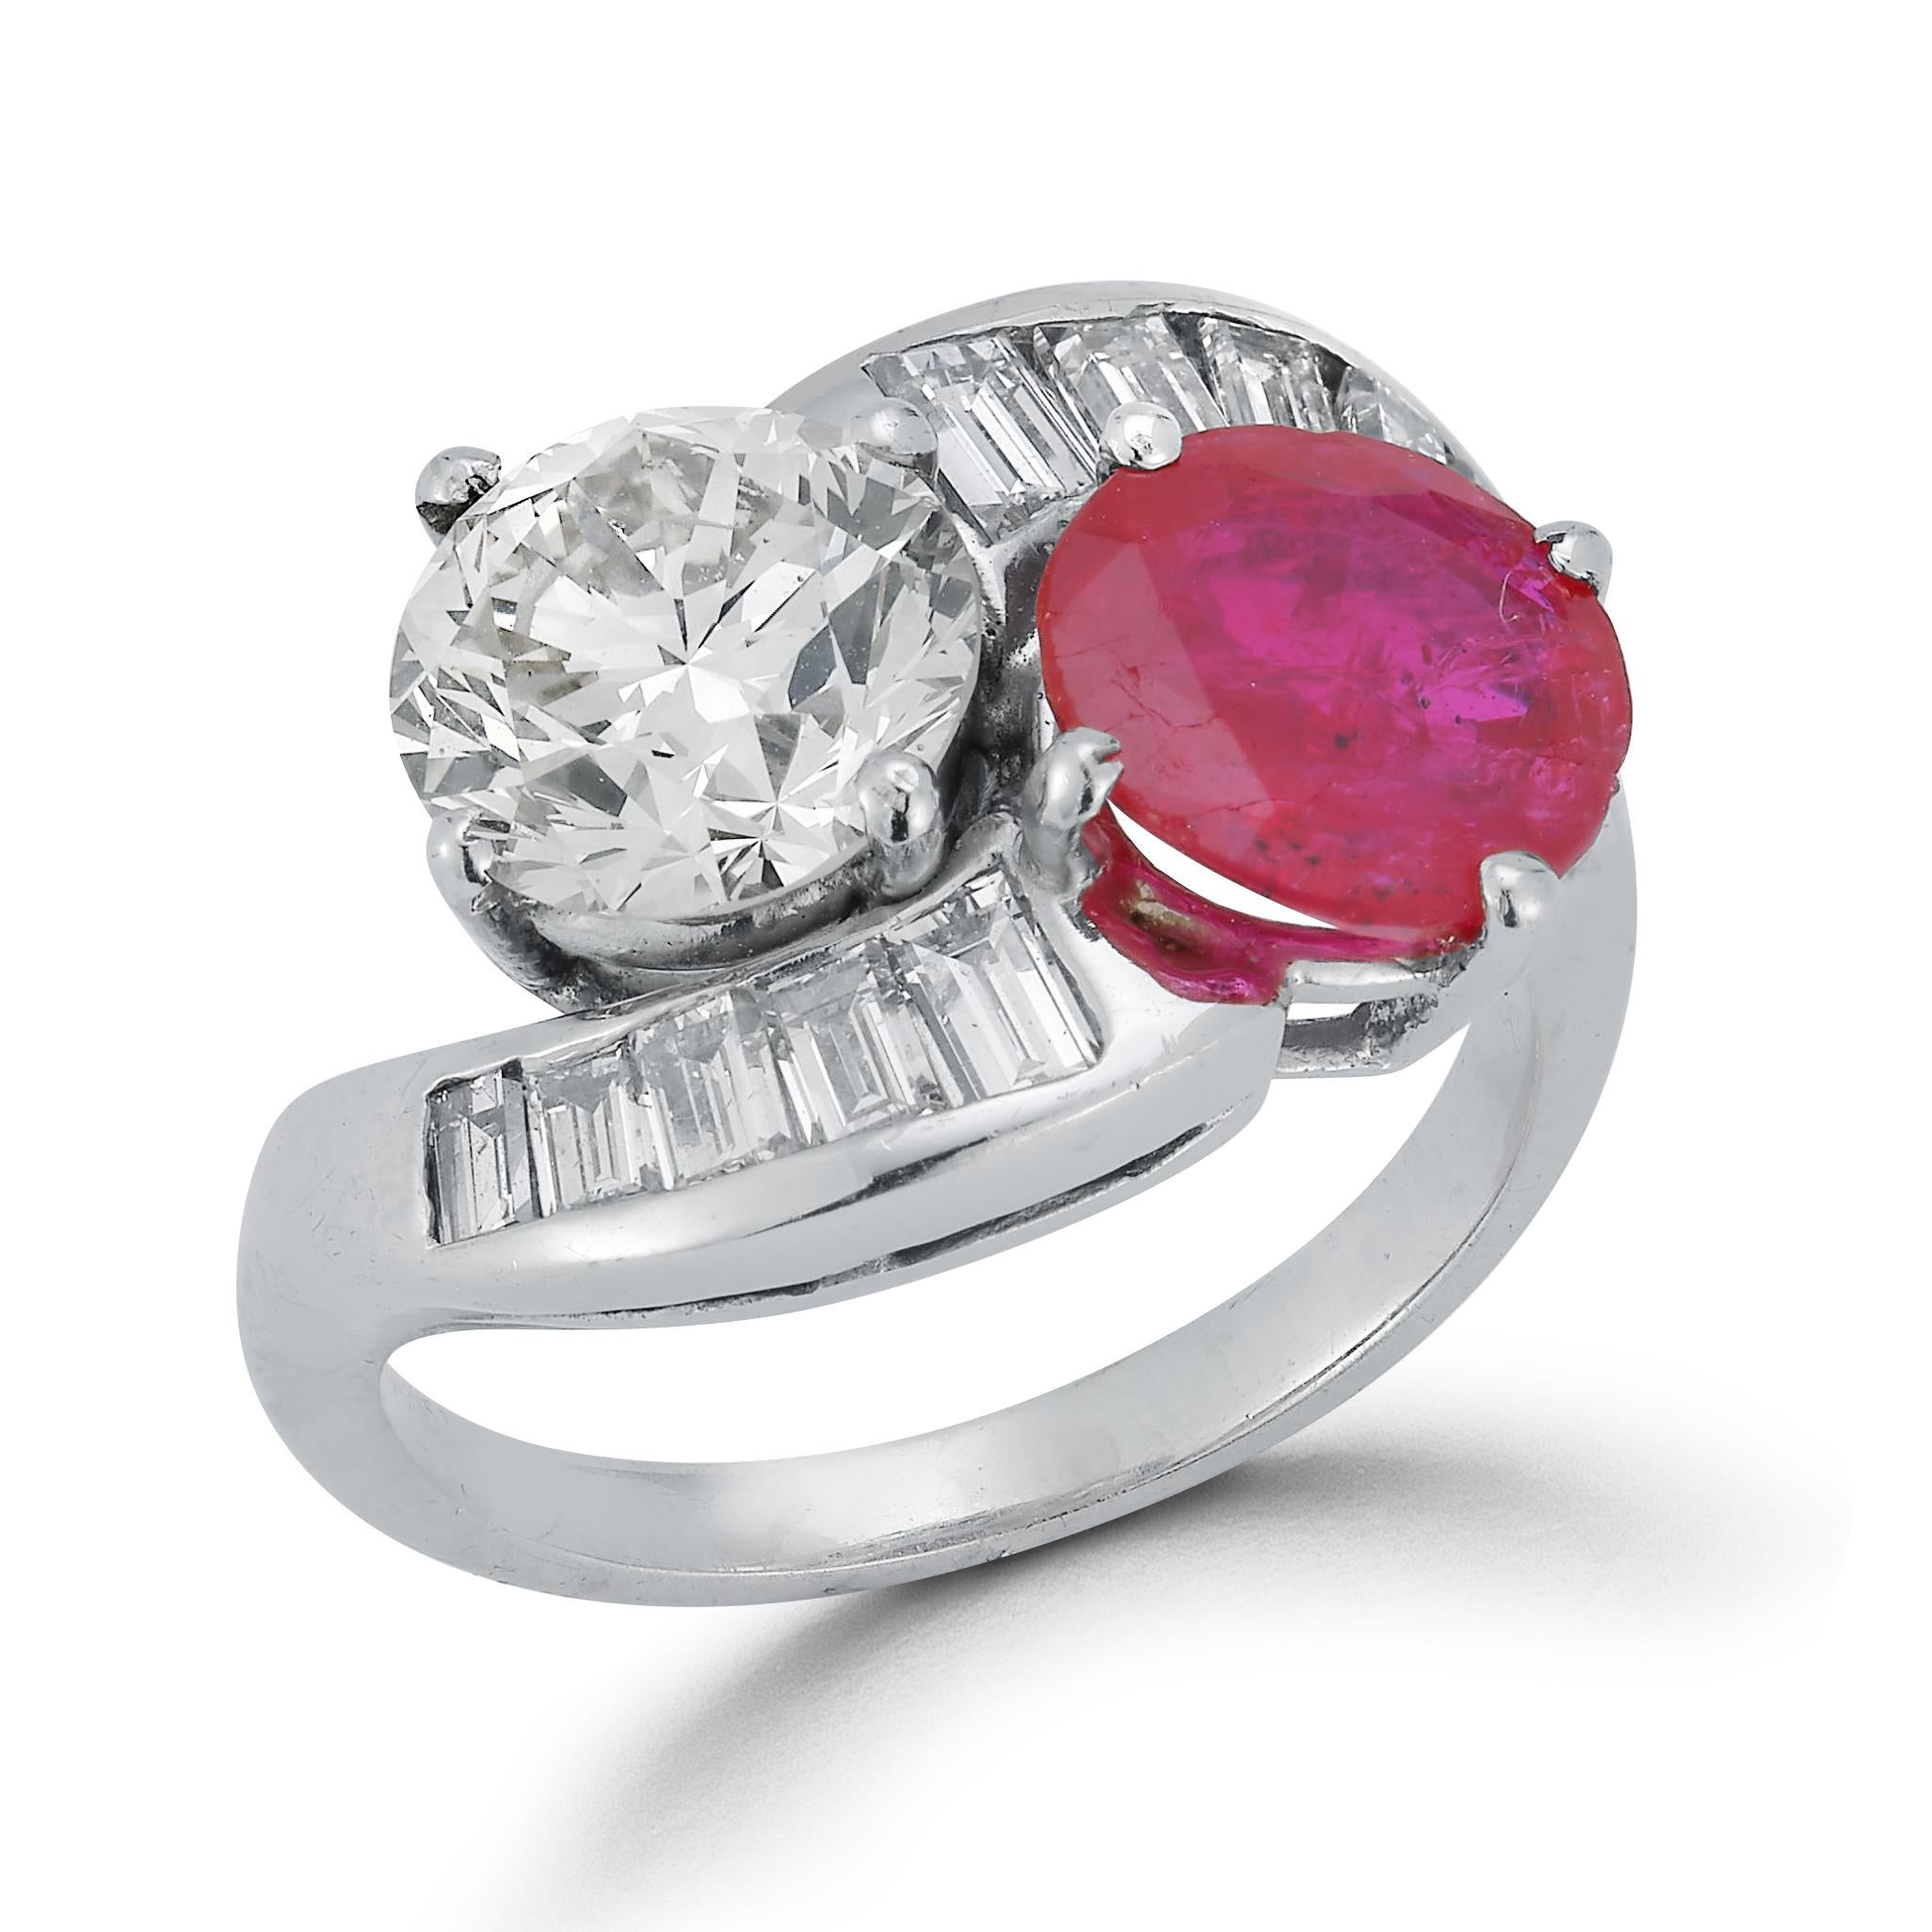 Bague You & Me en rubis et diamants

Design 